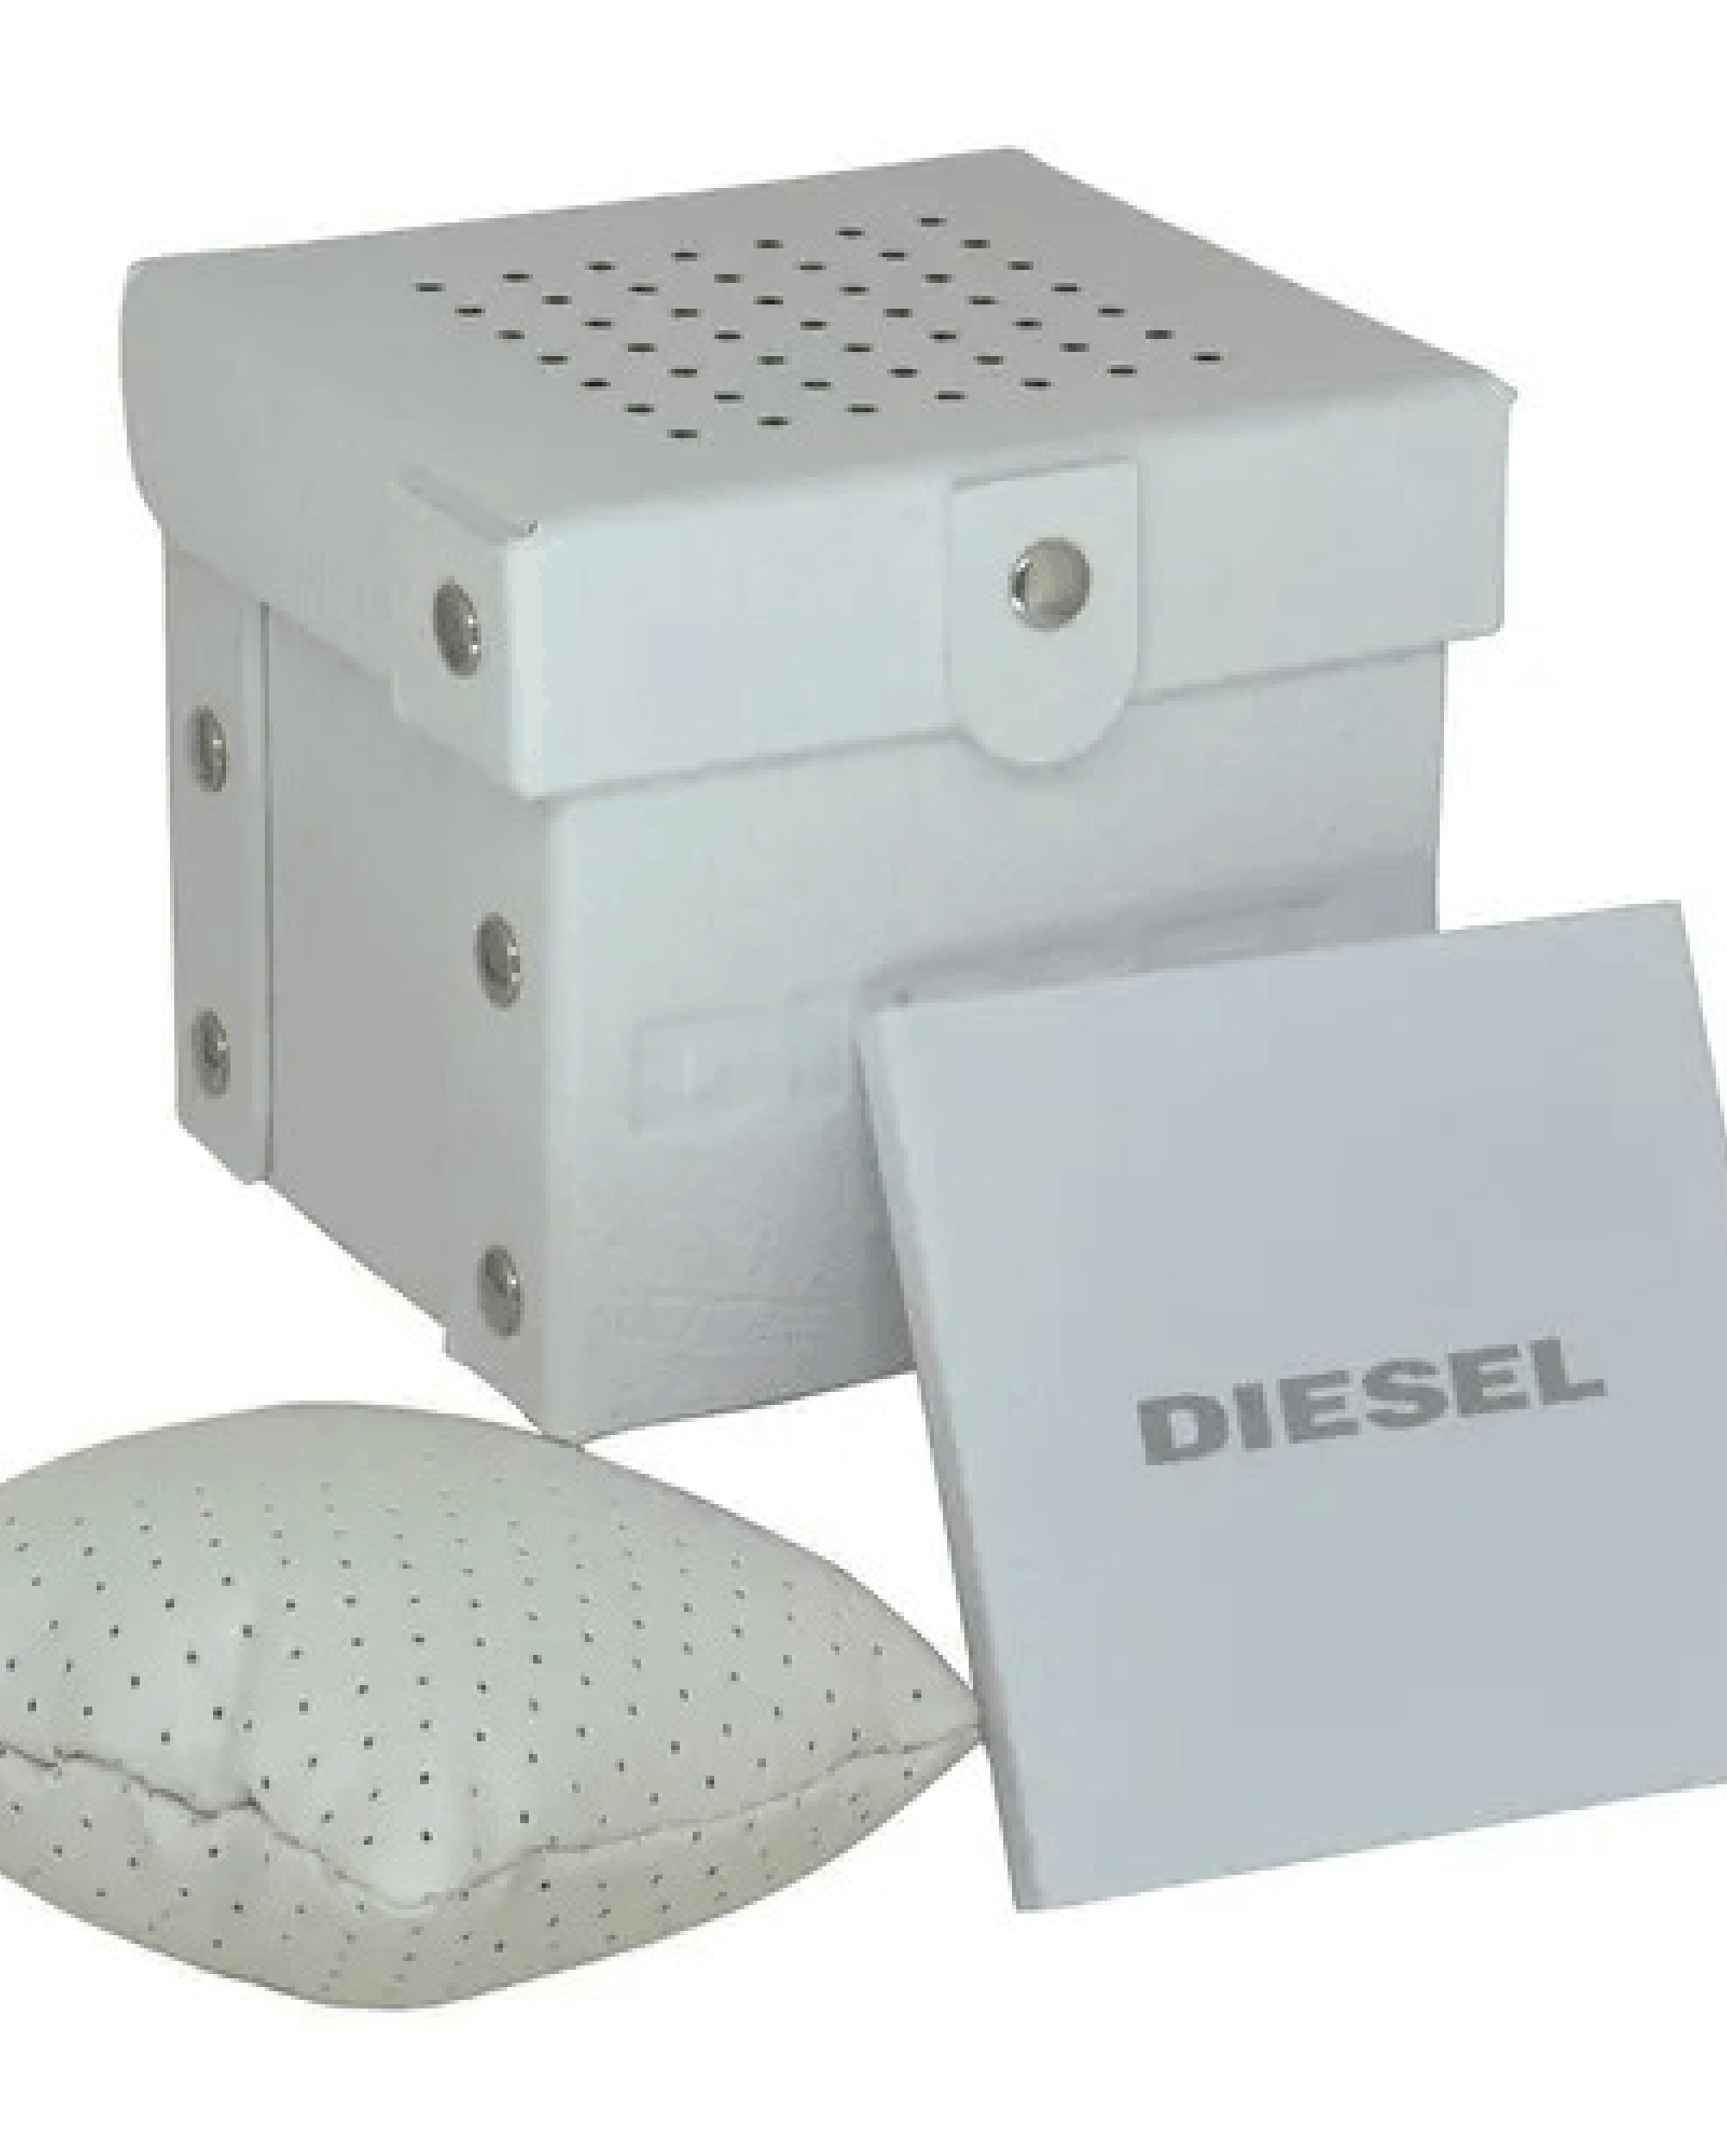 Caixa Diesel